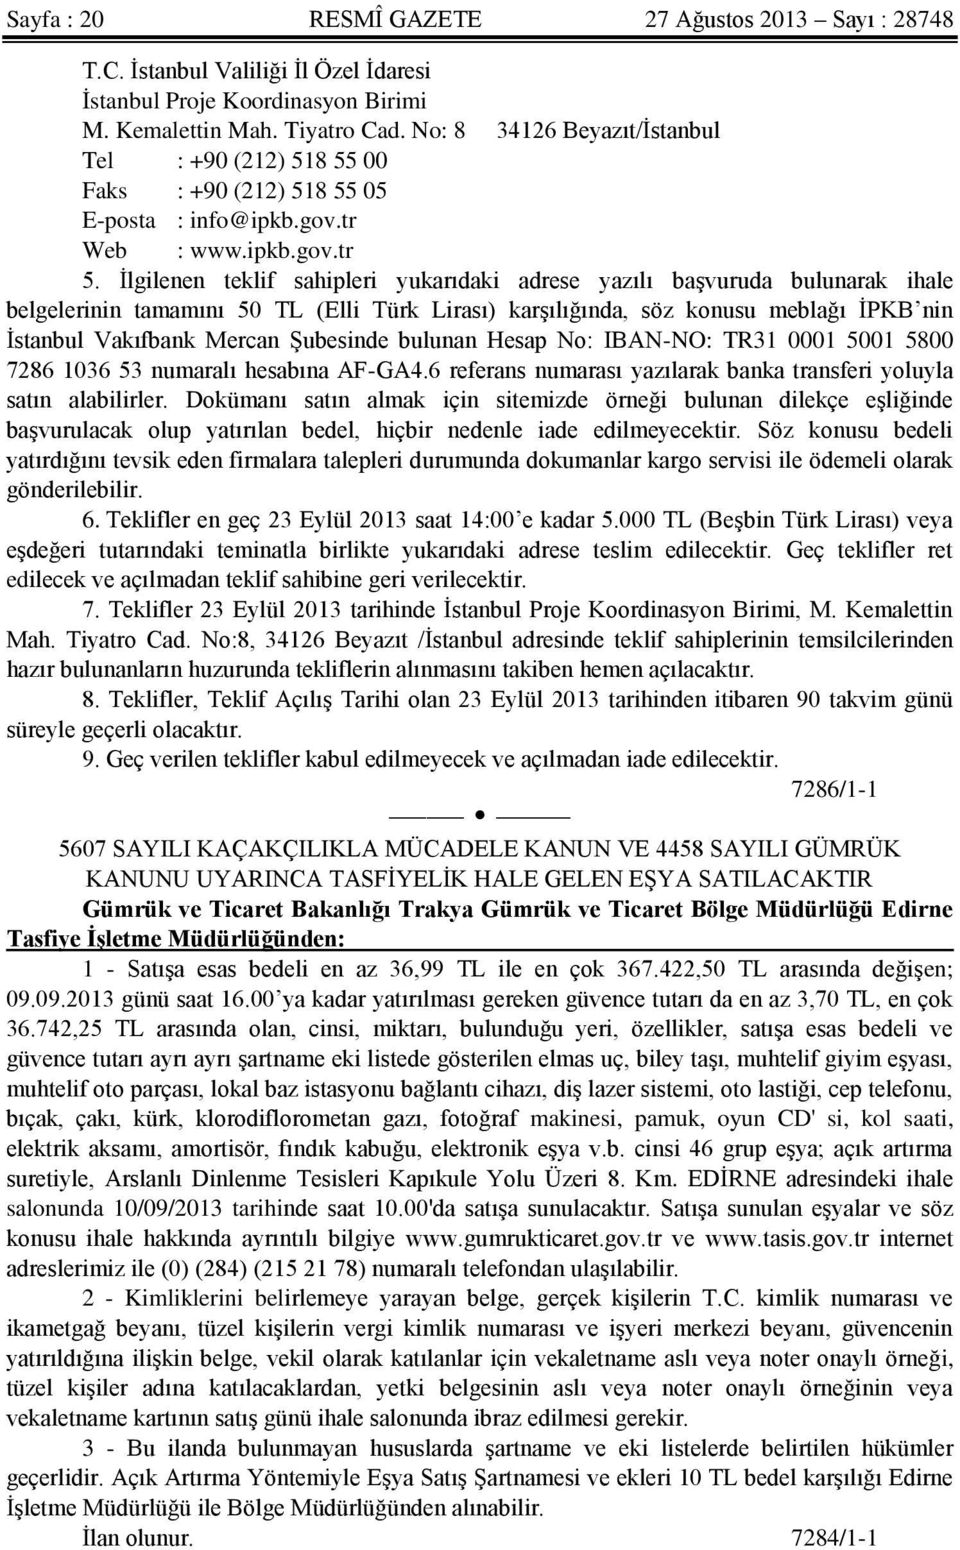 İlgilenen teklif sahipleri yukarıdaki adrese yazılı başvuruda bulunarak ihale belgelerinin tamamını 50 TL (Elli Türk Lirası) karşılığında, söz konusu meblağı İPKB nin İstanbul Vakıfbank Mercan